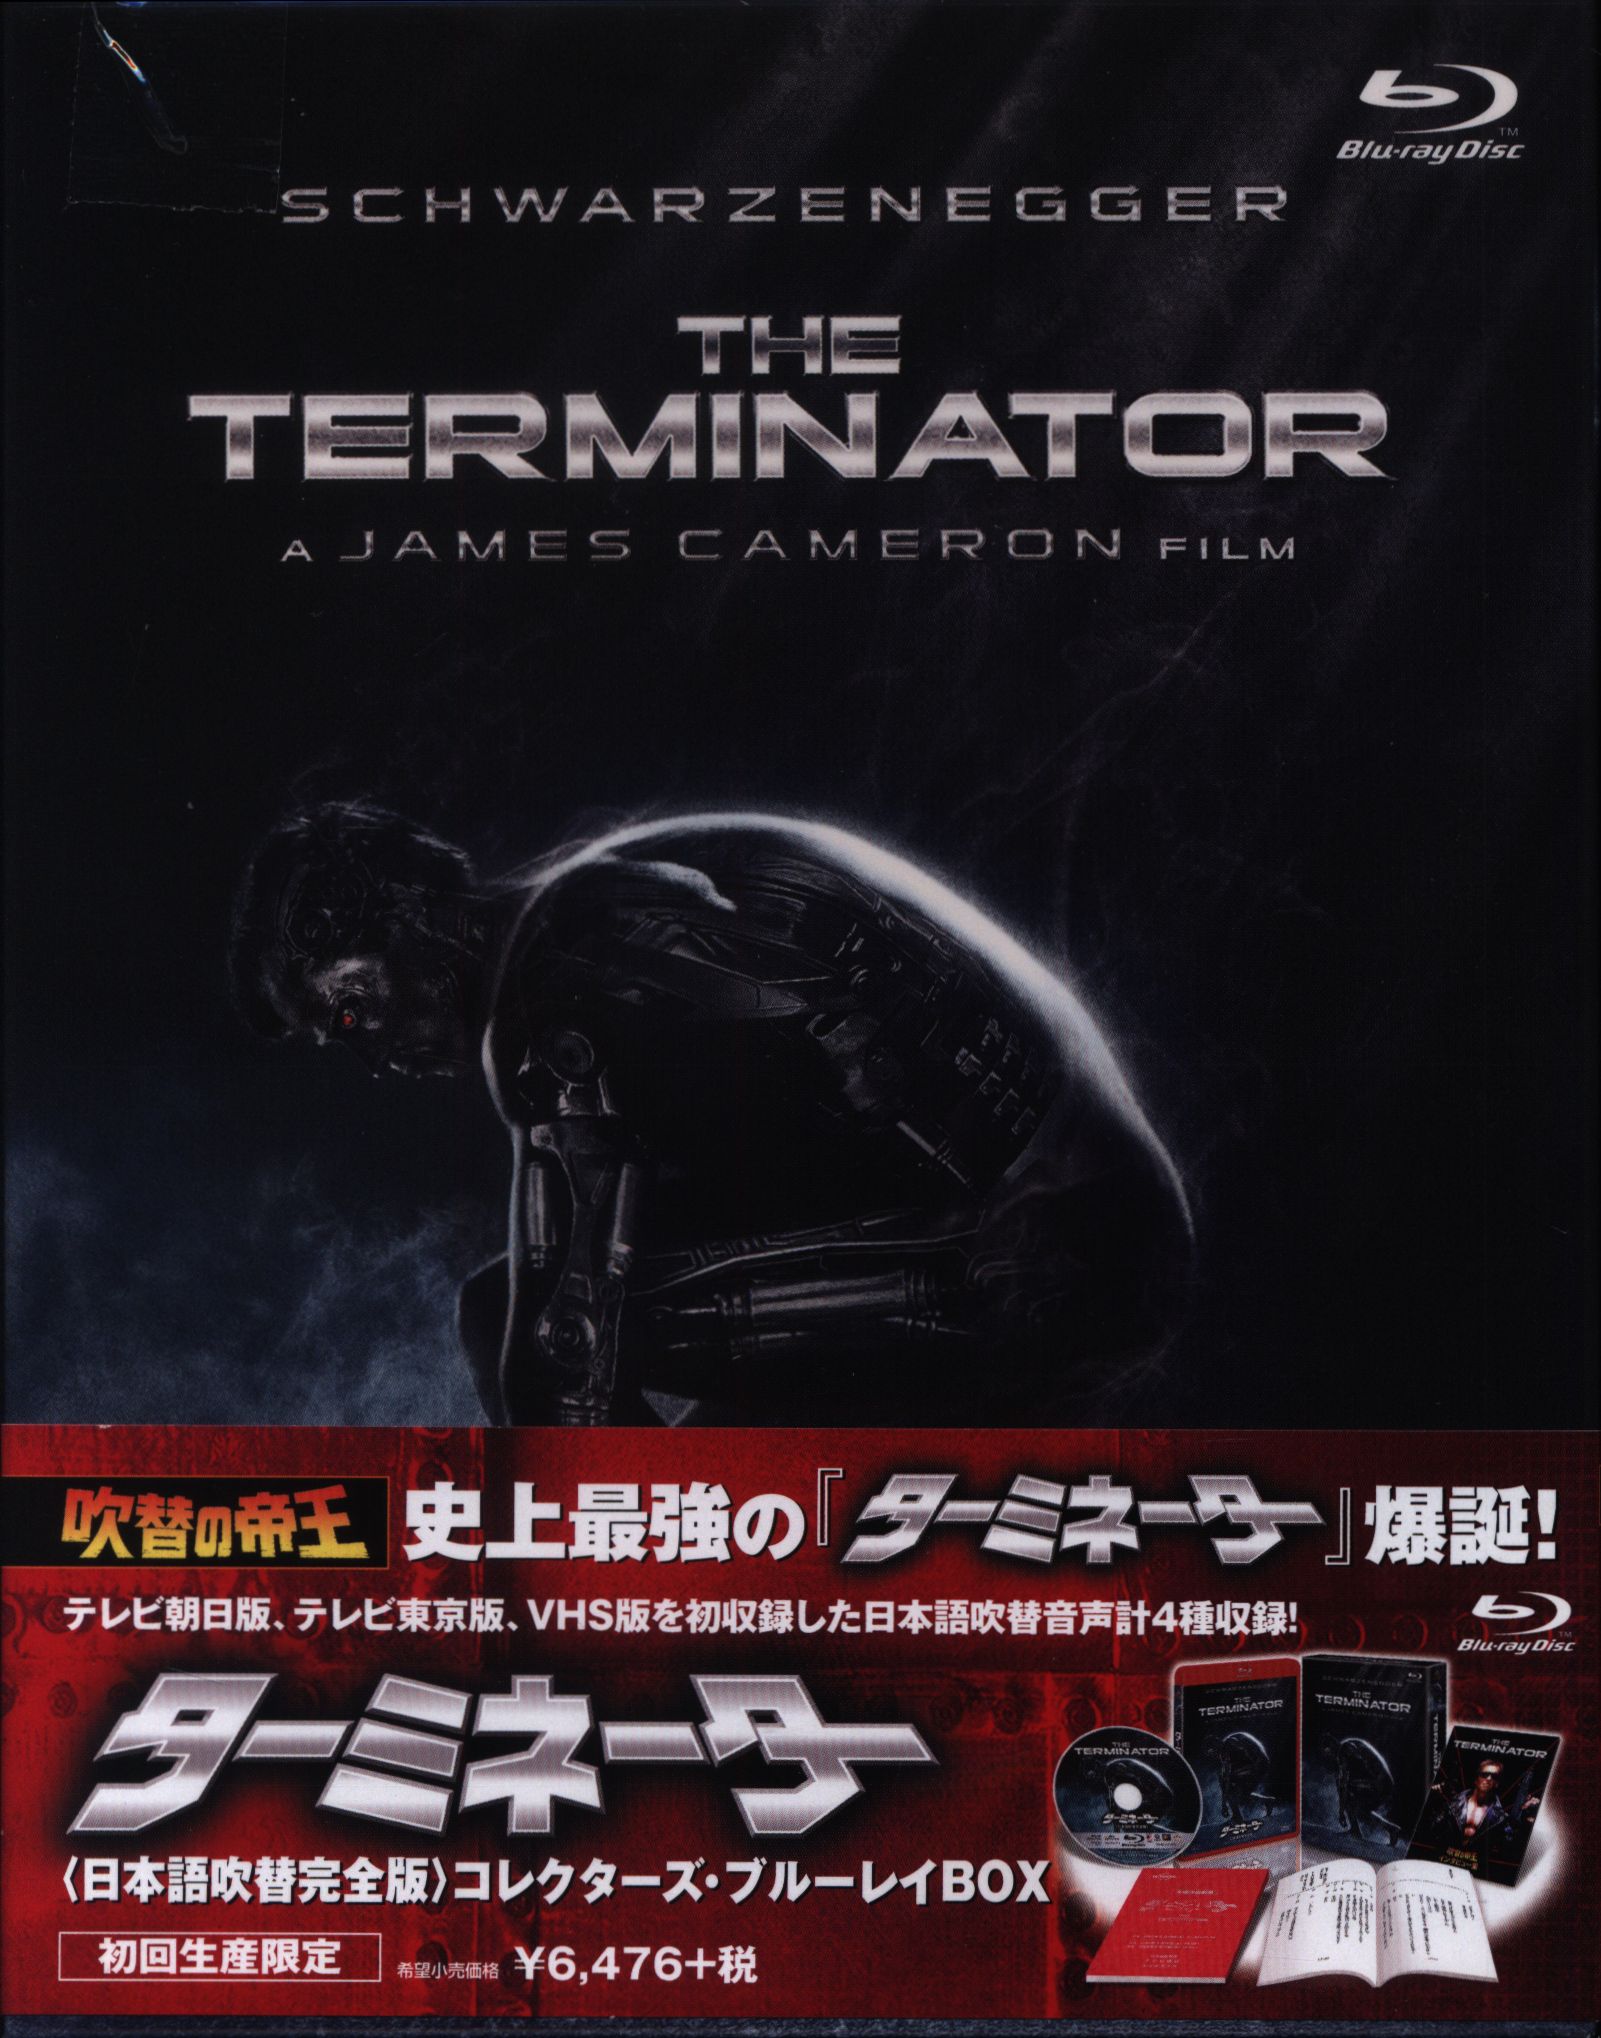 ターミネーター 日本語吹替完全版コレクターズブルーレイBOX Blu-ray